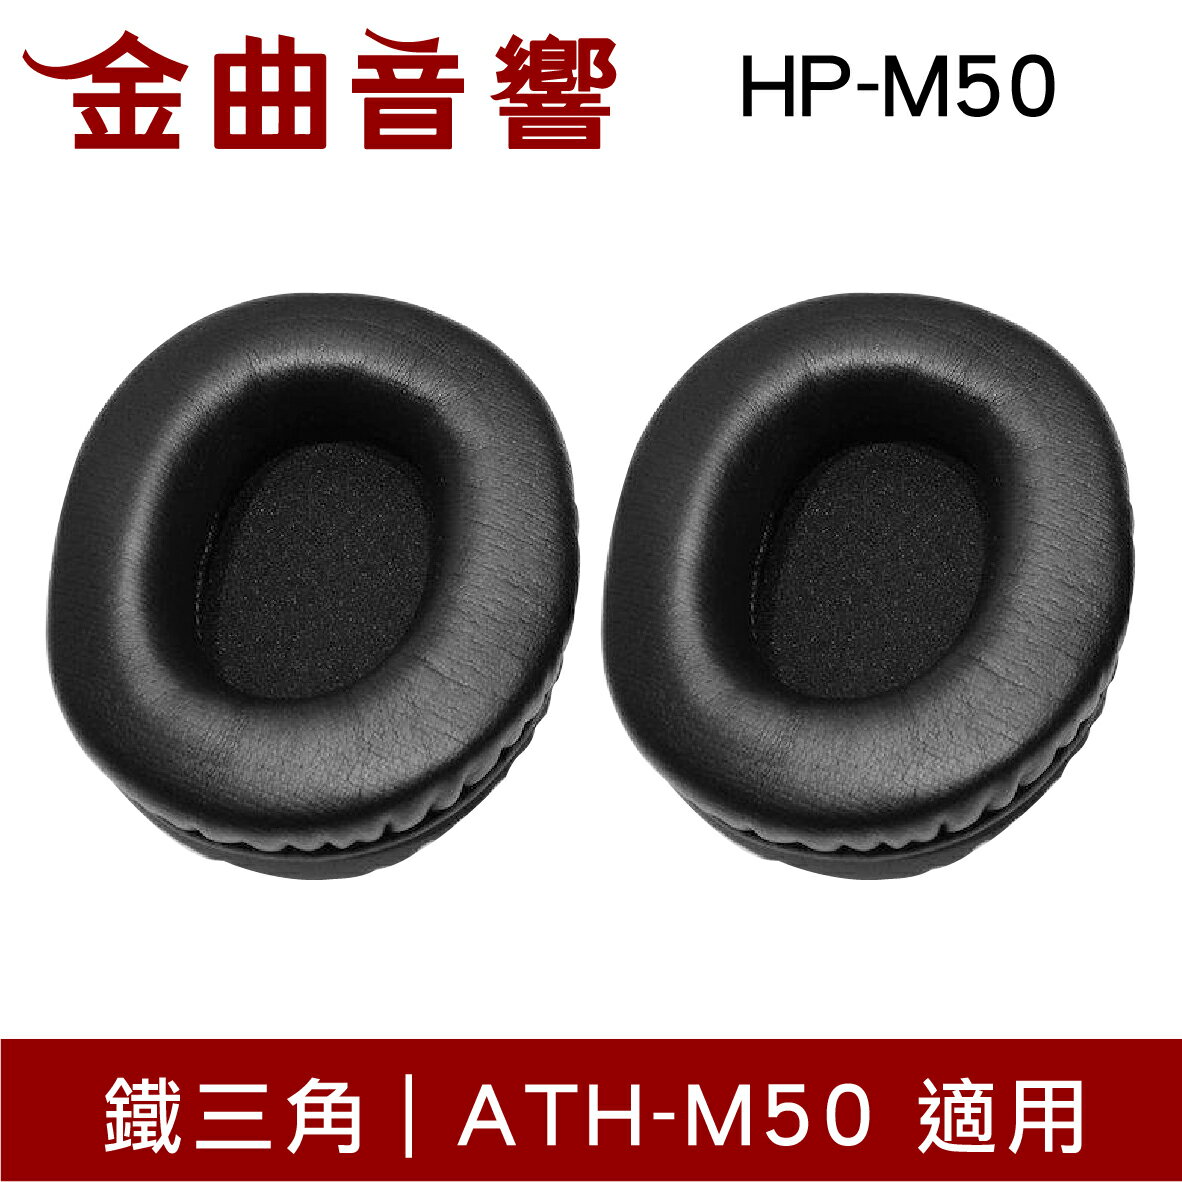 鐵三角 HP-M50 替換耳罩 一對 ATH-M50 適用 | 金曲音響